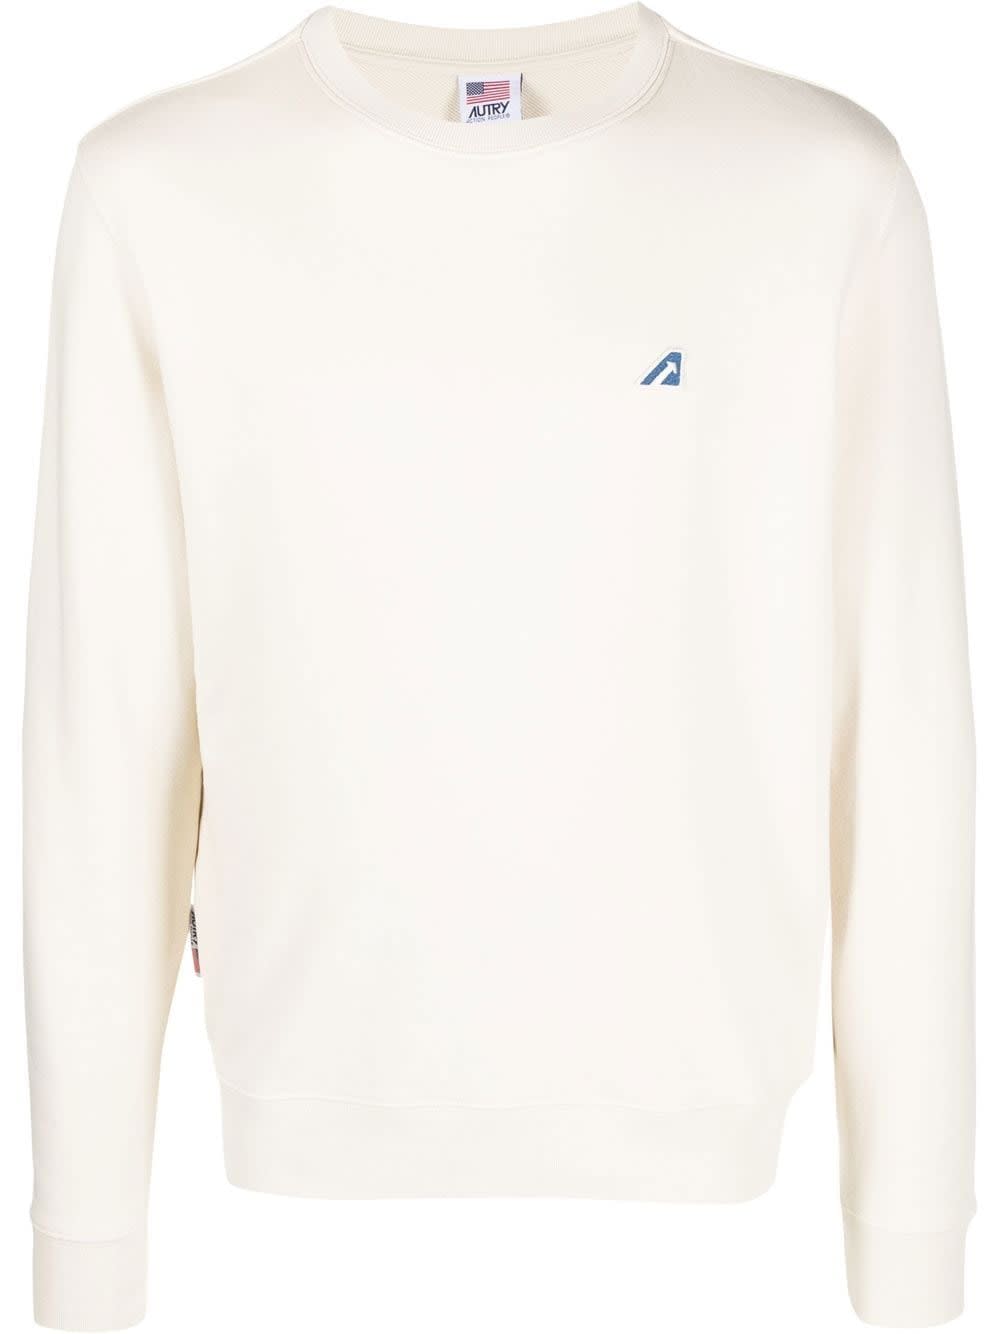 Autry Tennis Academy Sweatshirt In White